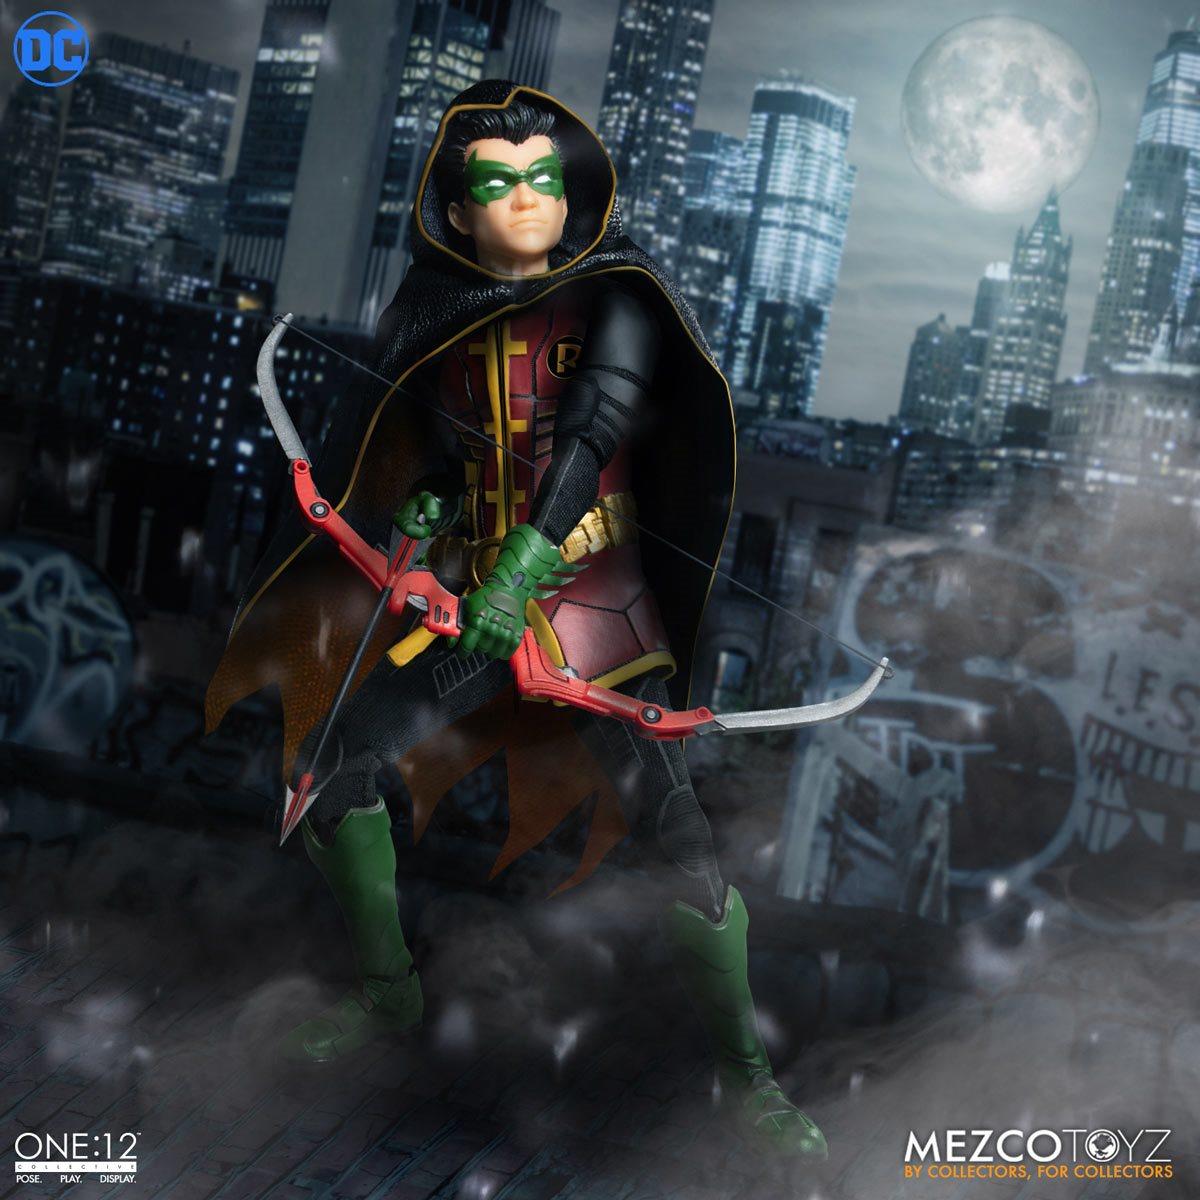 Mezco Toyz announces One:12 Collective Damian Wayne Robin